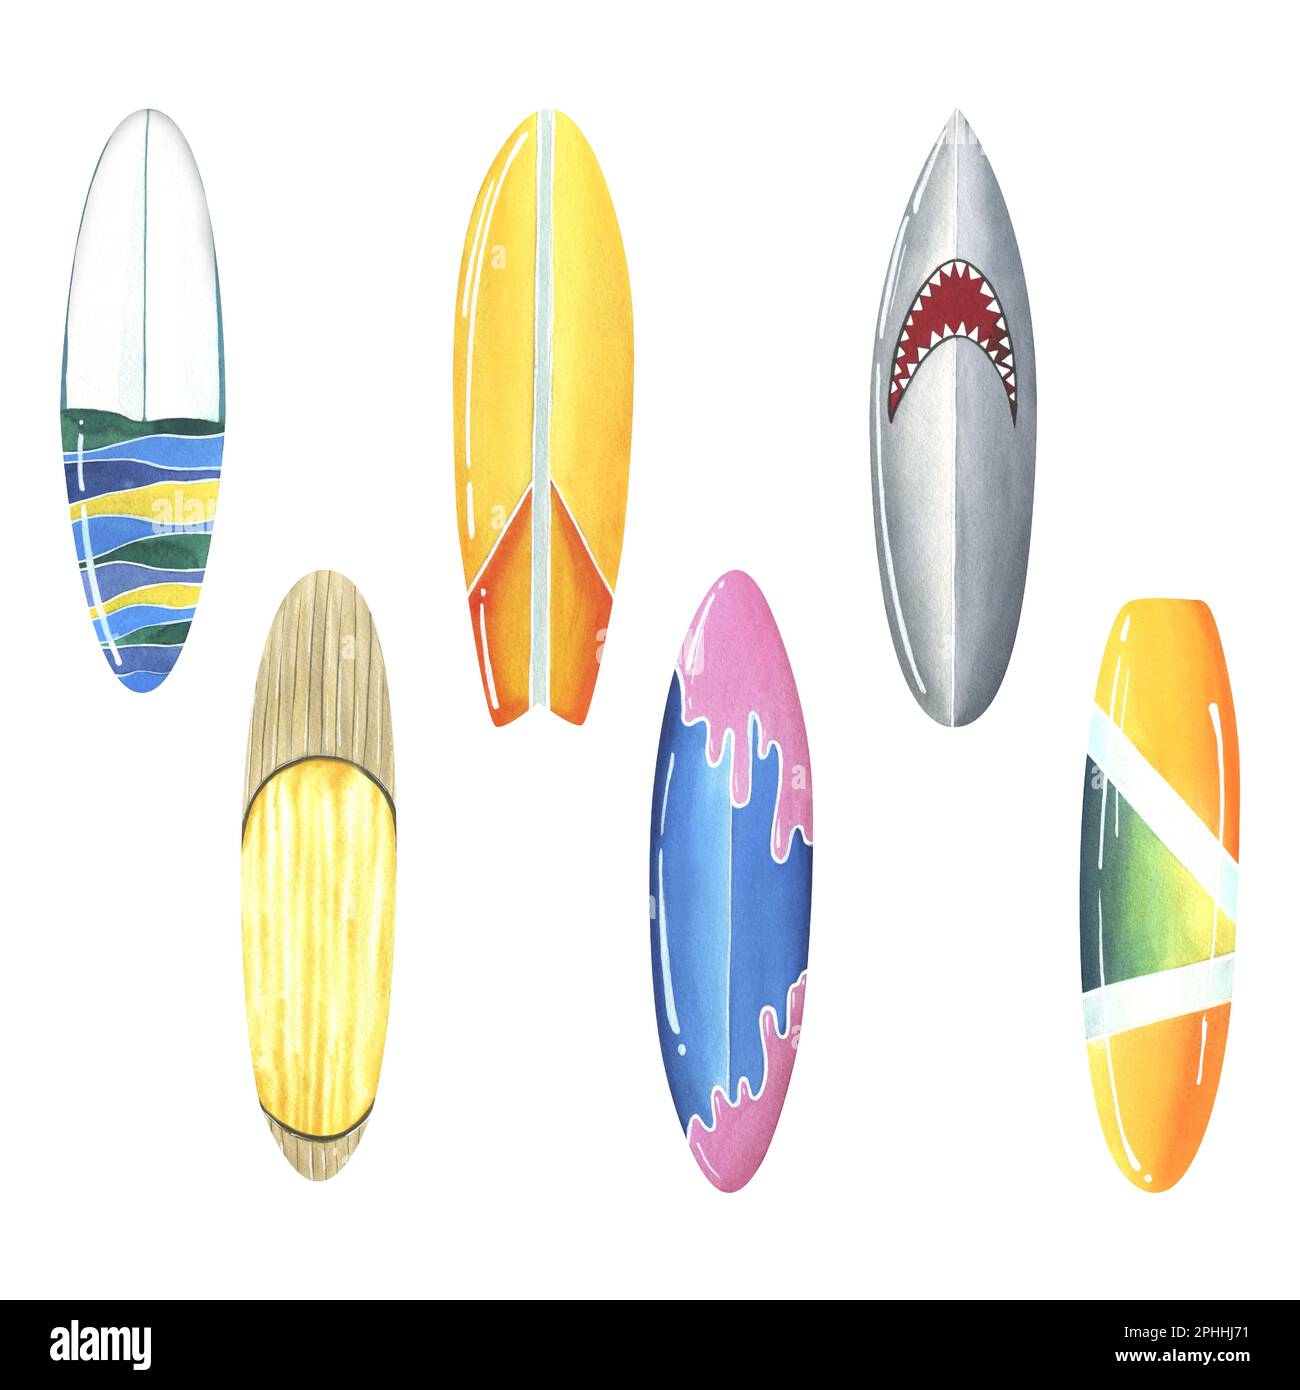 Planches de surf multicolores lumineuses en jaune, orange, gris, bleu et rose. Illustration aquarelle. Ensemble d'éléments isolés sur fond blanc. Pour Banque D'Images